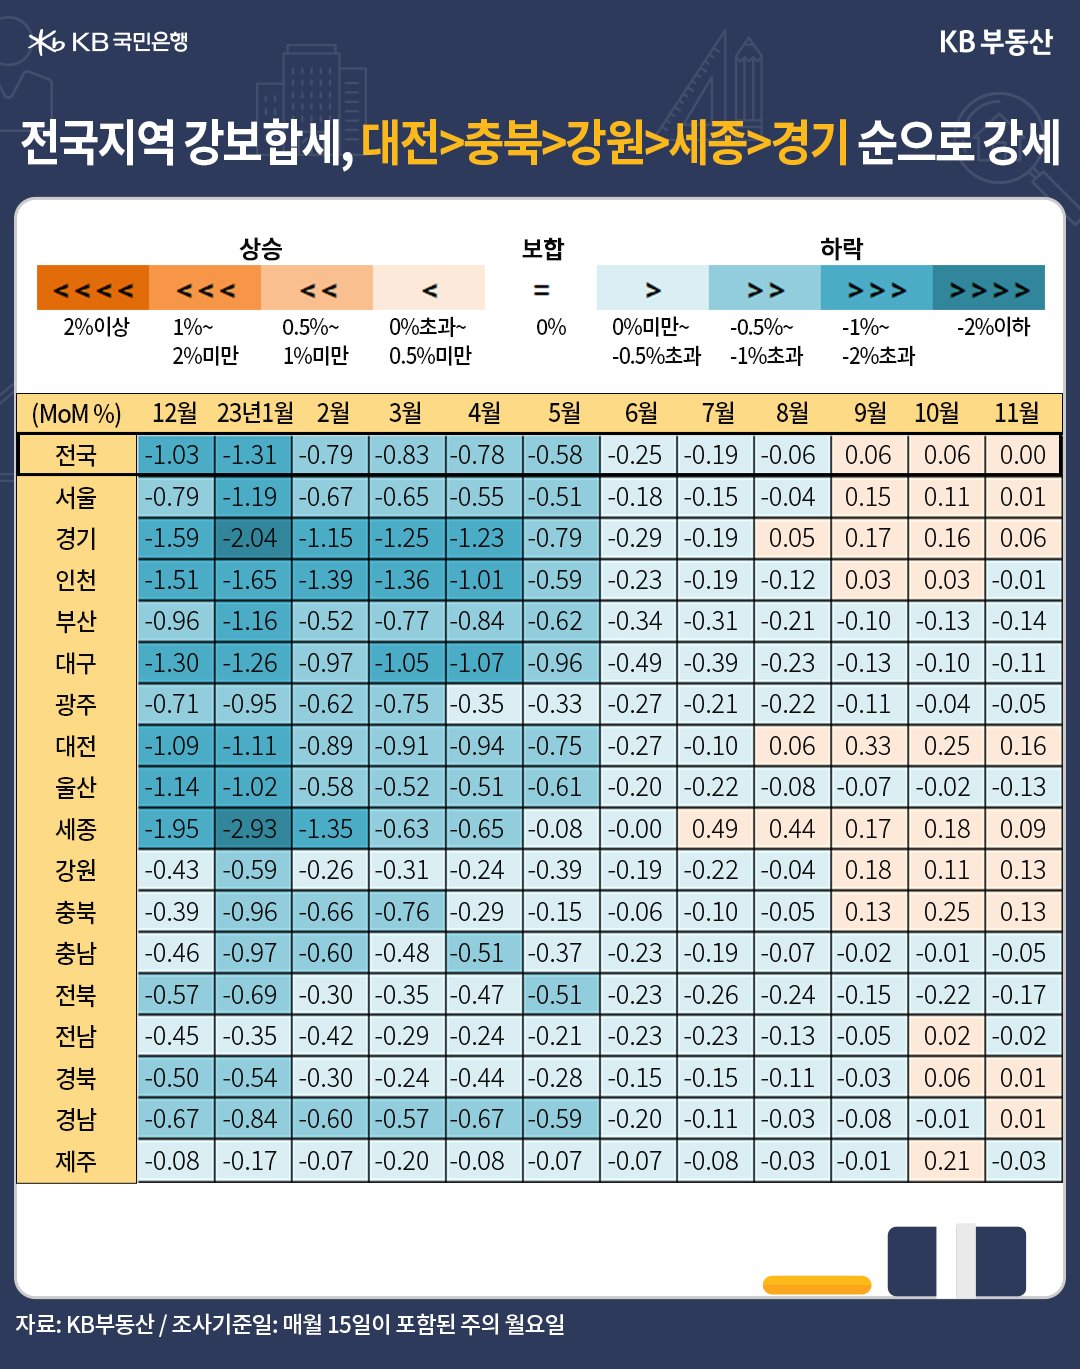 전국지역 주택매매가격의 월별 증감률이 나타난 표. 대전, 충북, 강원, 세종, 경기 순으로 강세를 보이고 있다.